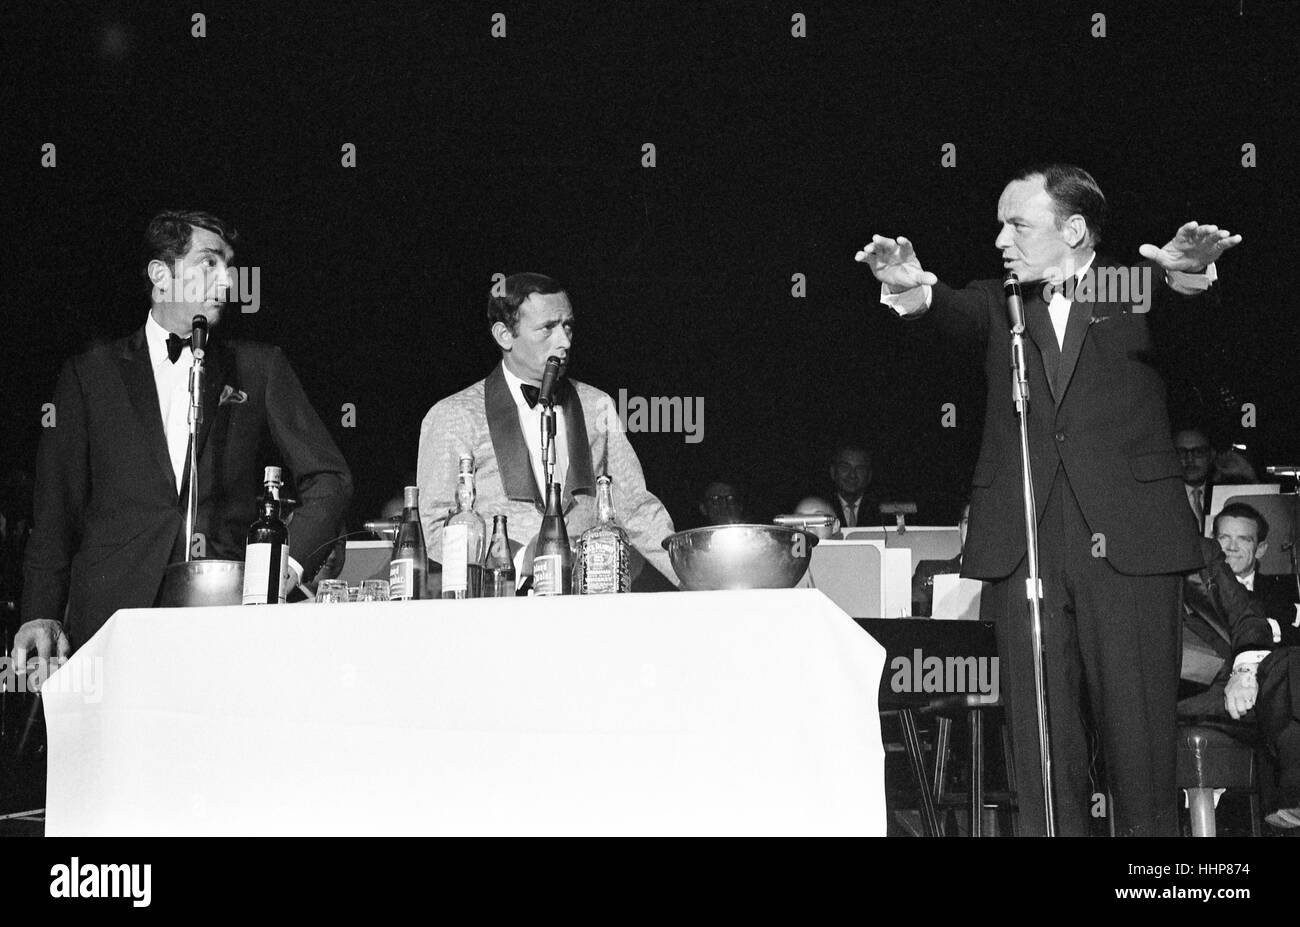 Dean Martin, Joey Bishop, y Frank Sinatra en el escenario Foto de stock